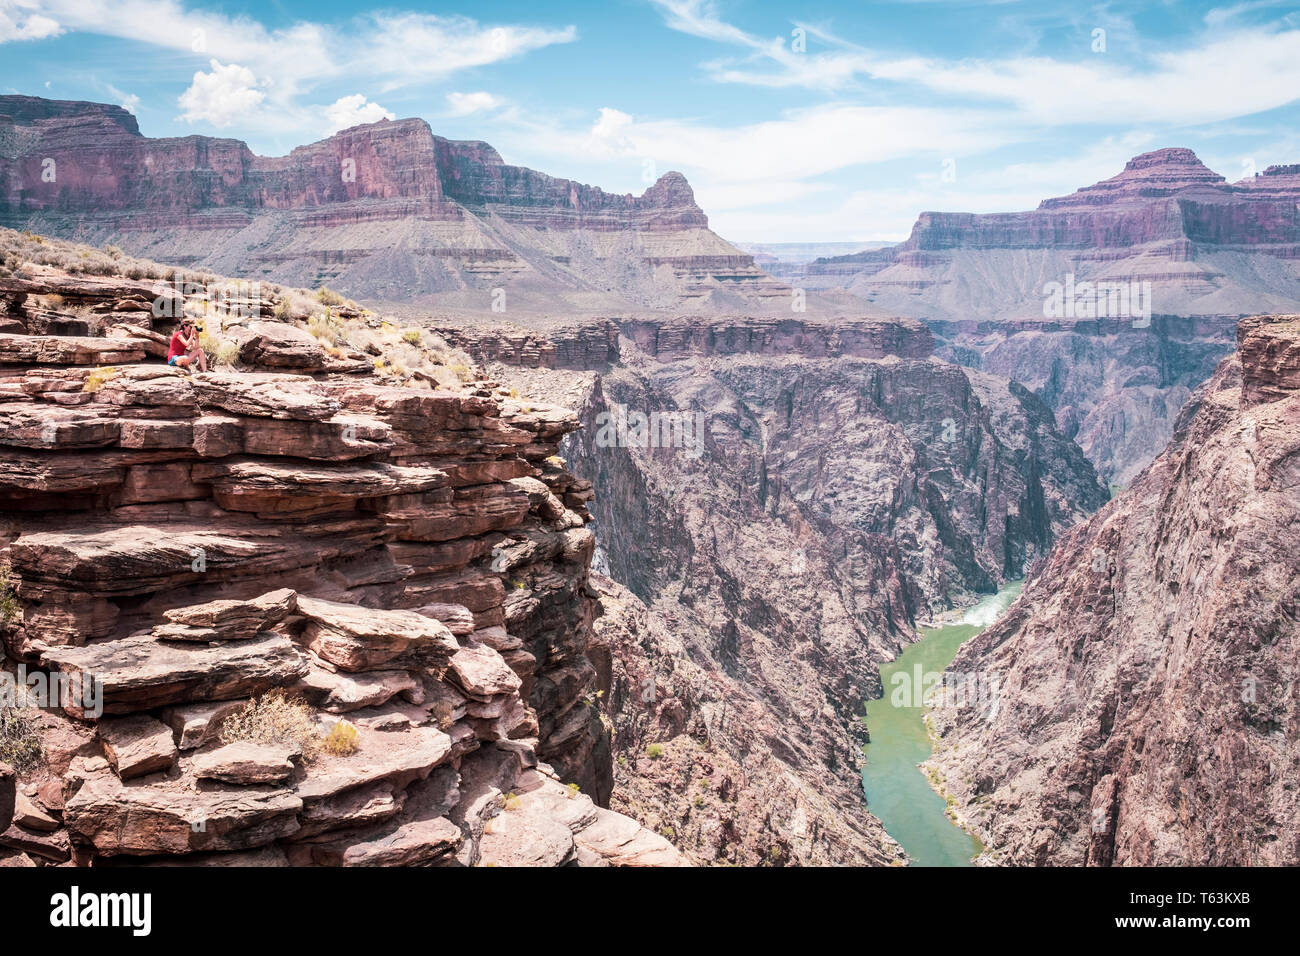 Visiteuse photographier une vue imprenable sur la rivière Colorado Plateau de point à Grand Canyon National Park, Arizona, USA Banque D'Images